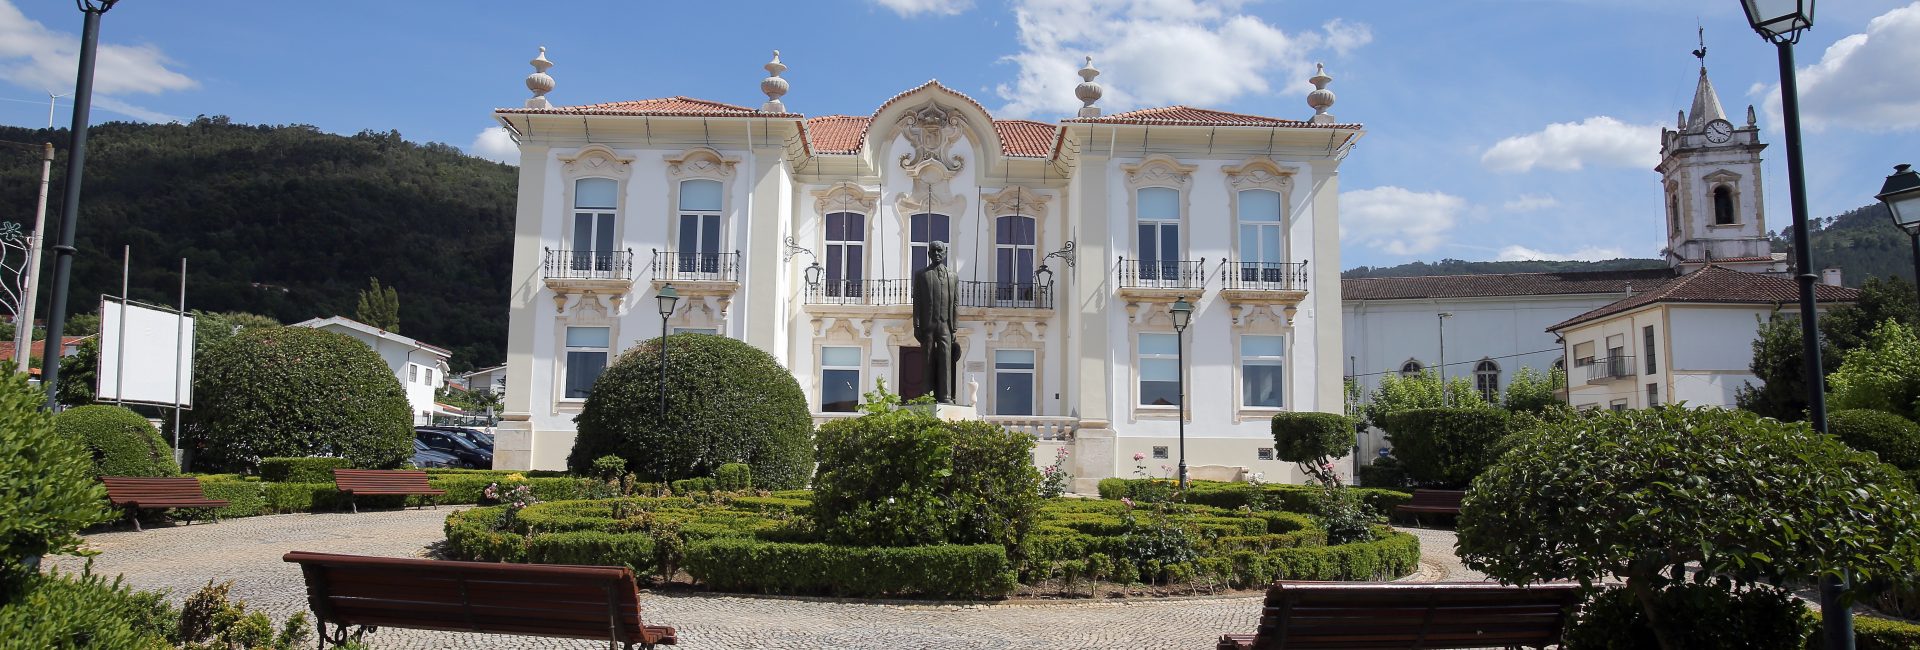 Câmara Municipal da Lousã mantém investimento anual nas Freguesias